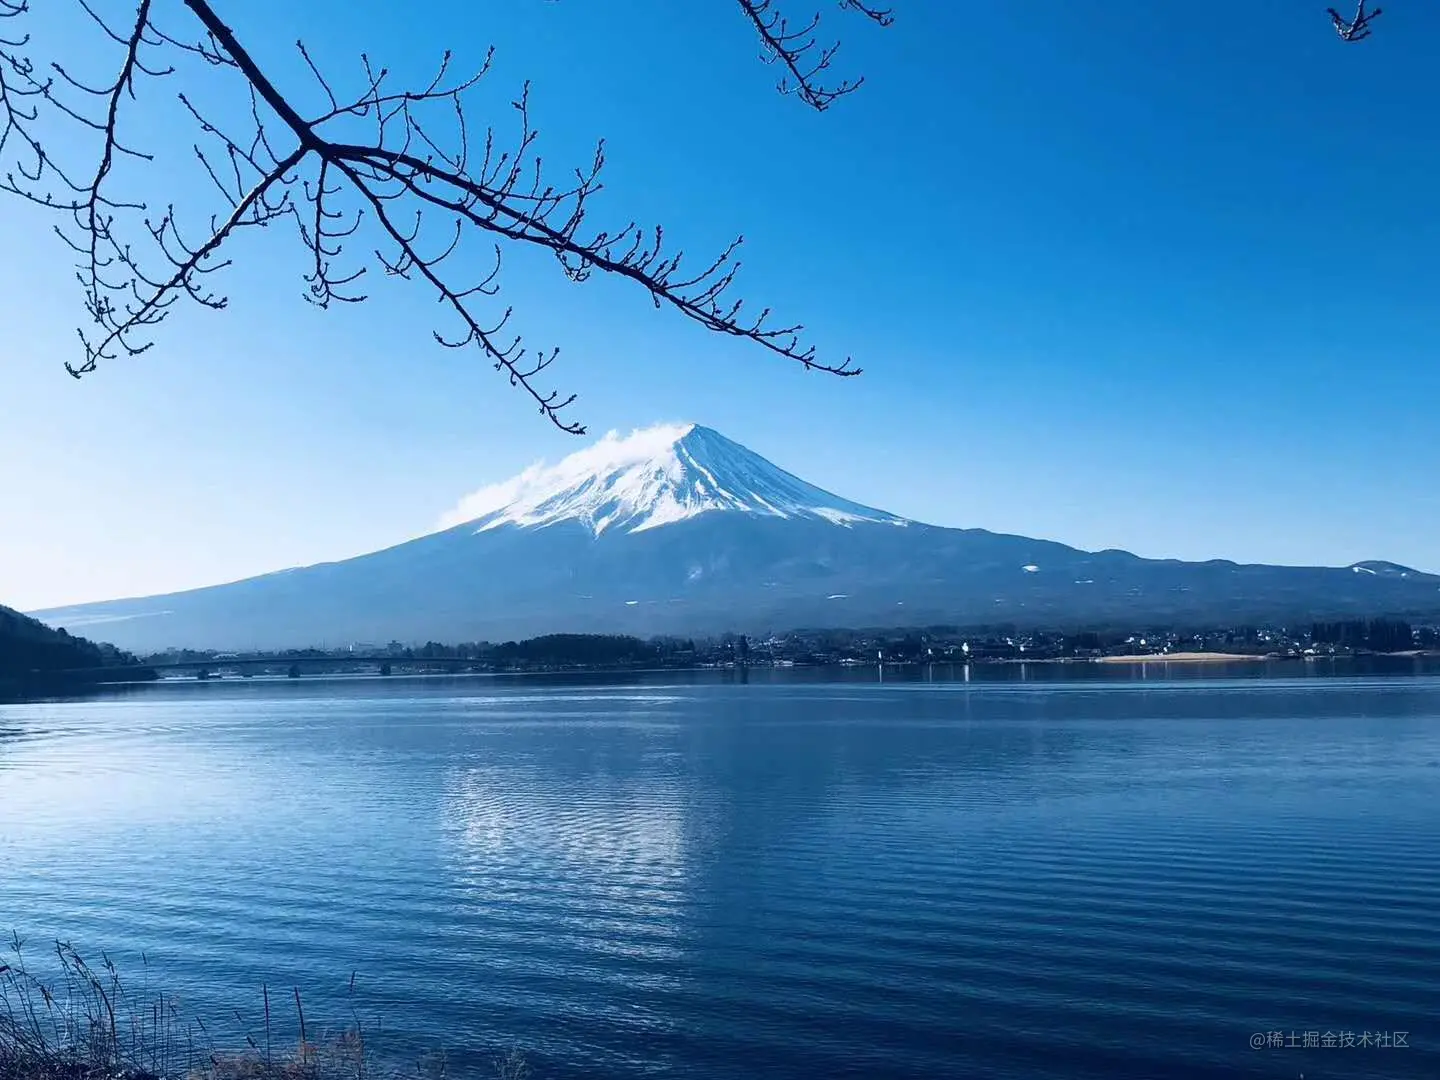 moiunt-Fuji